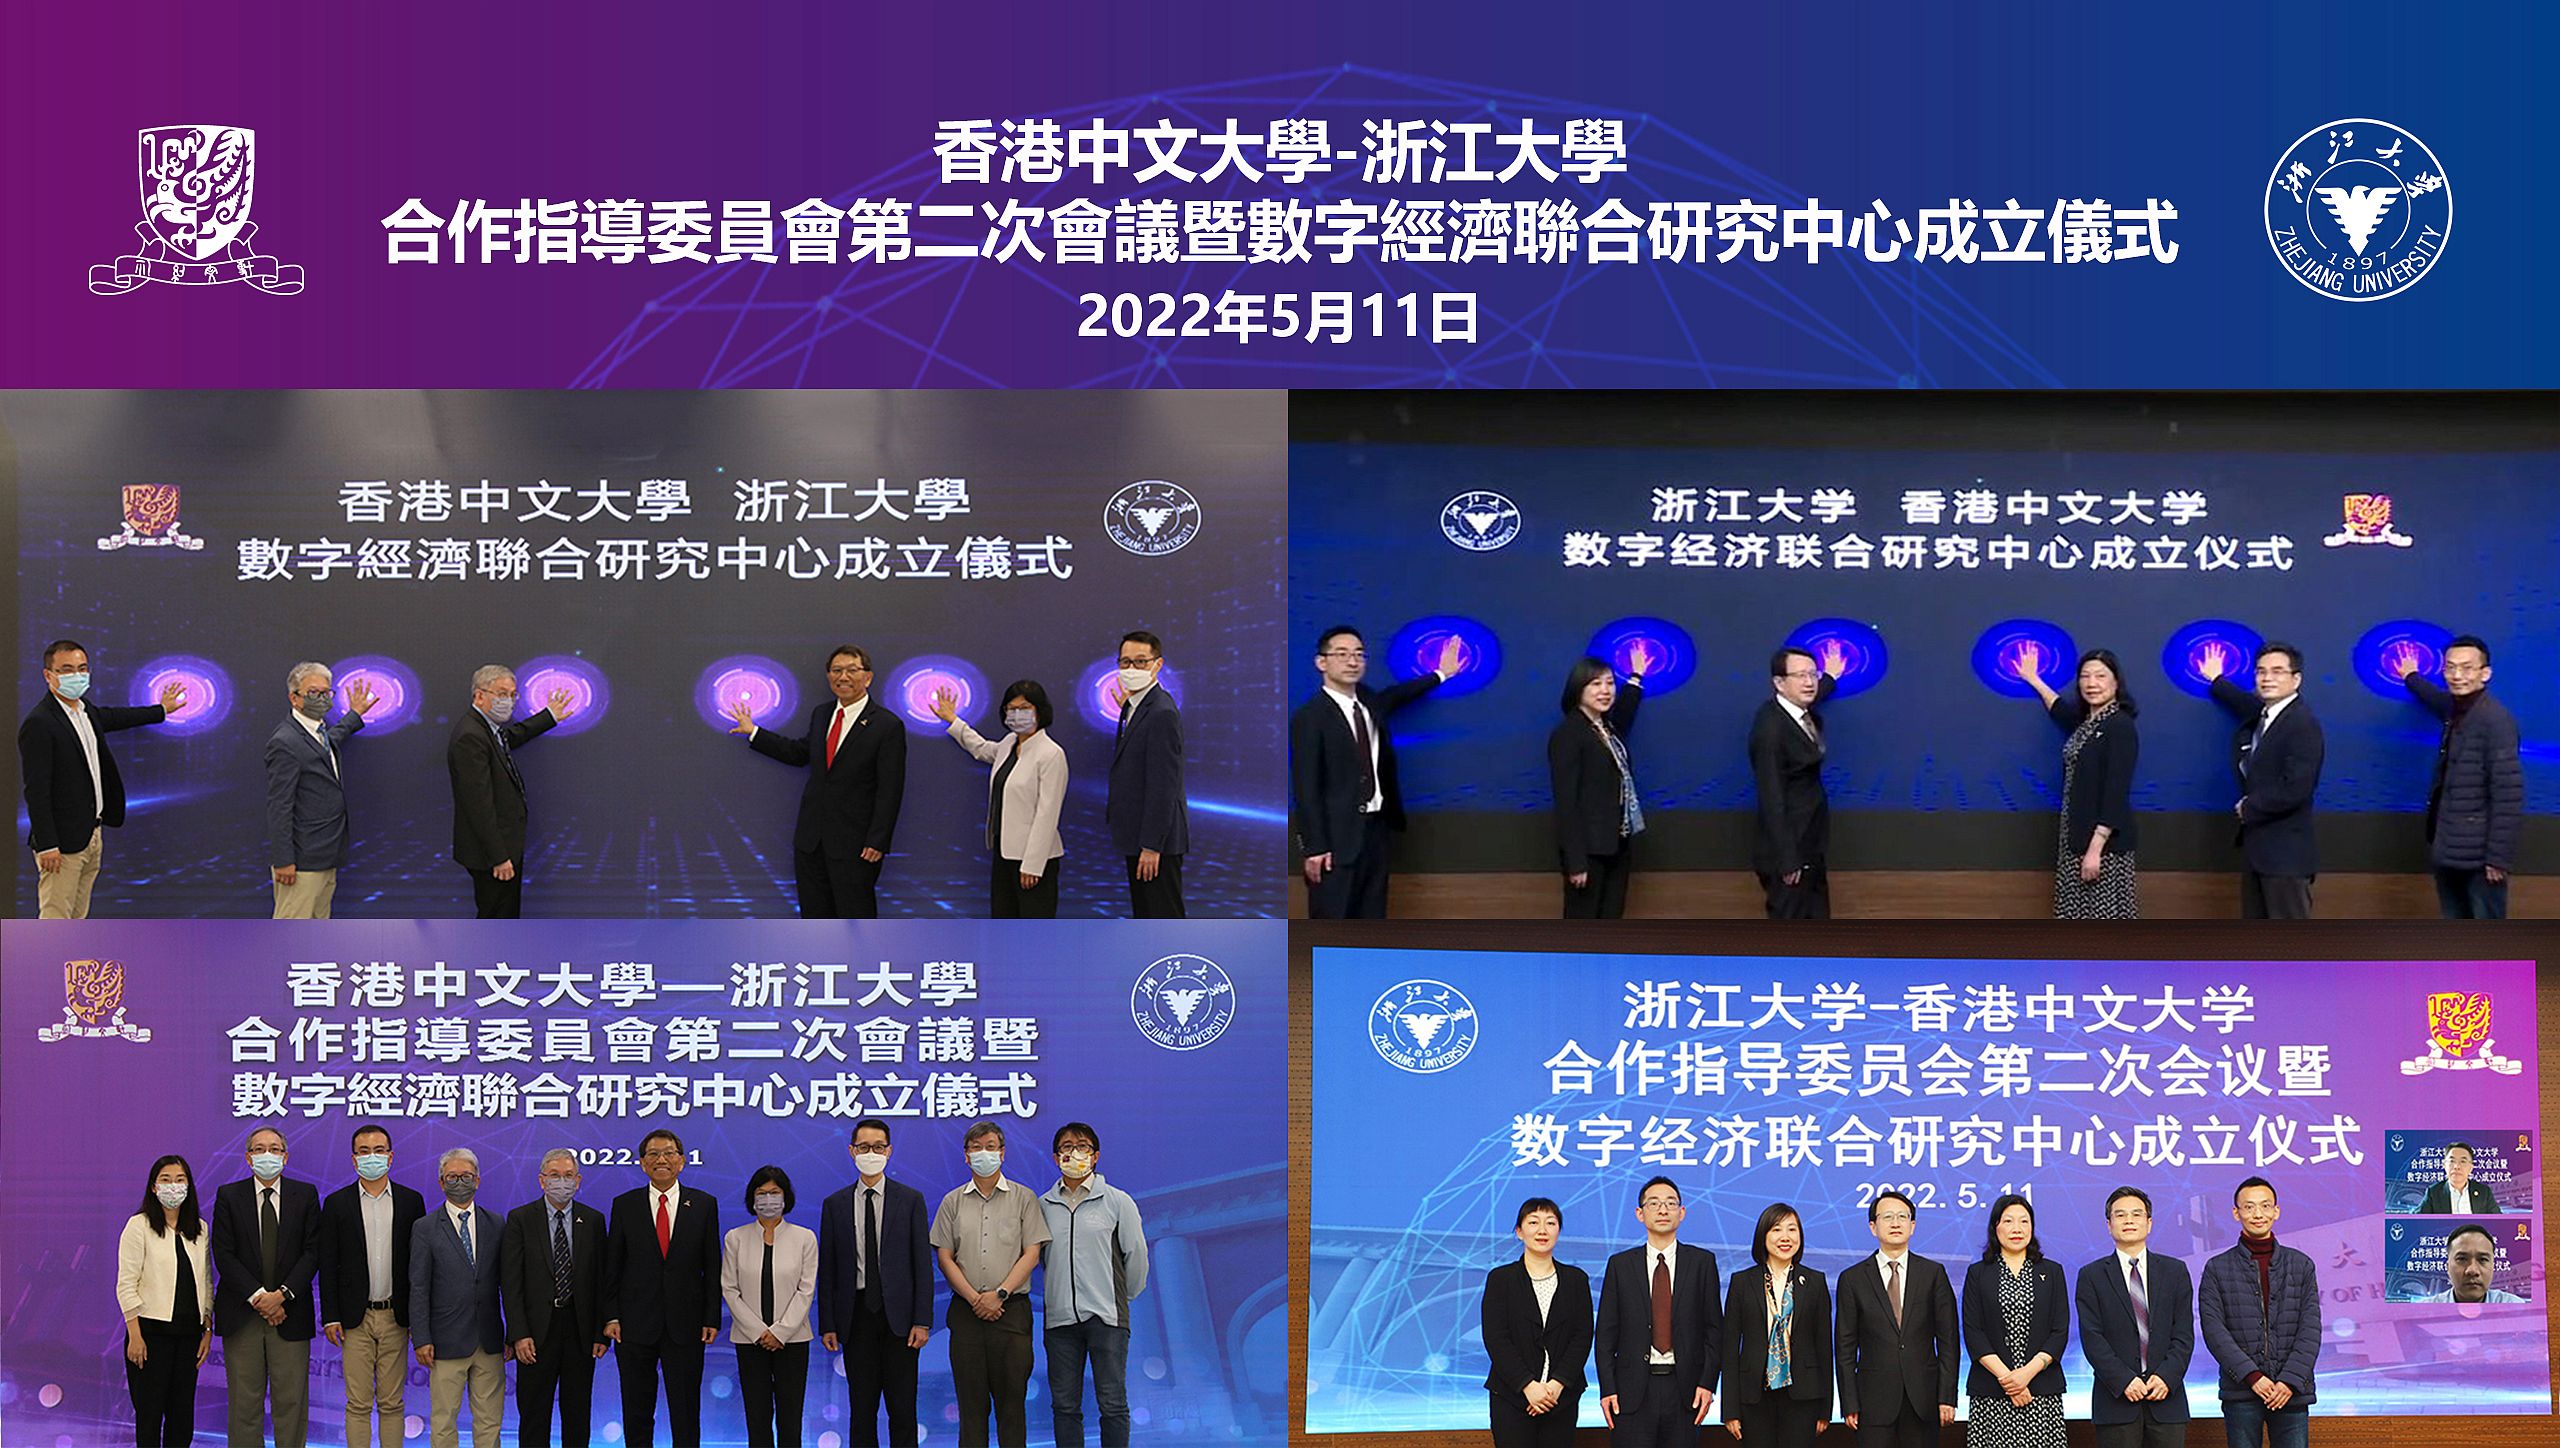 中大與浙江大學舉行合作指導委員會會議暨數字經濟聯合研究中心成立典禮